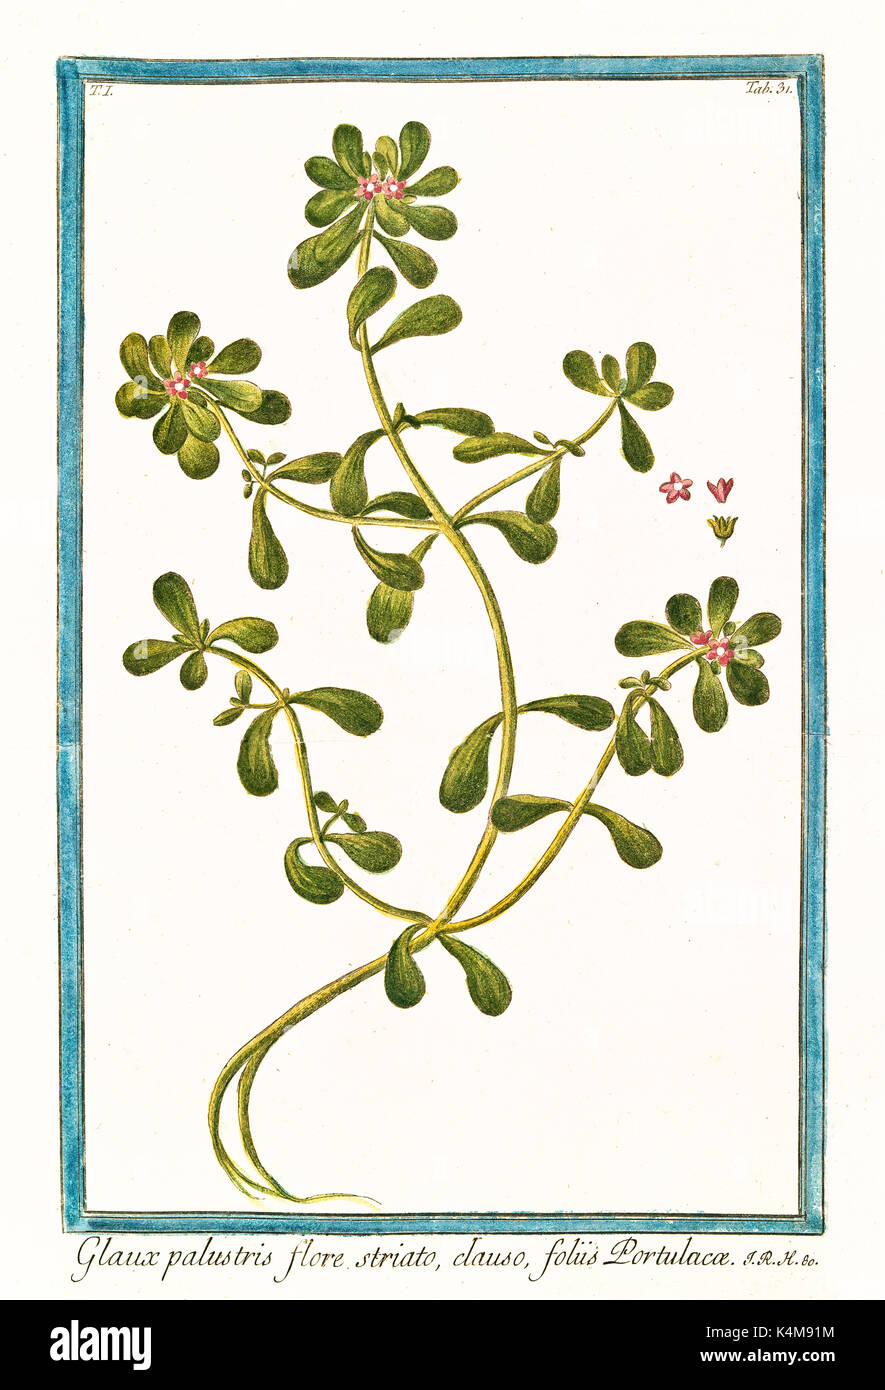 Vieille illustration de Glaux palustris, flore striato (Portulaca oleracea). Par G. Bonelli sur Hortus Romanus, publ. N. Martelli, Rome, 1772 - 93 Banque D'Images